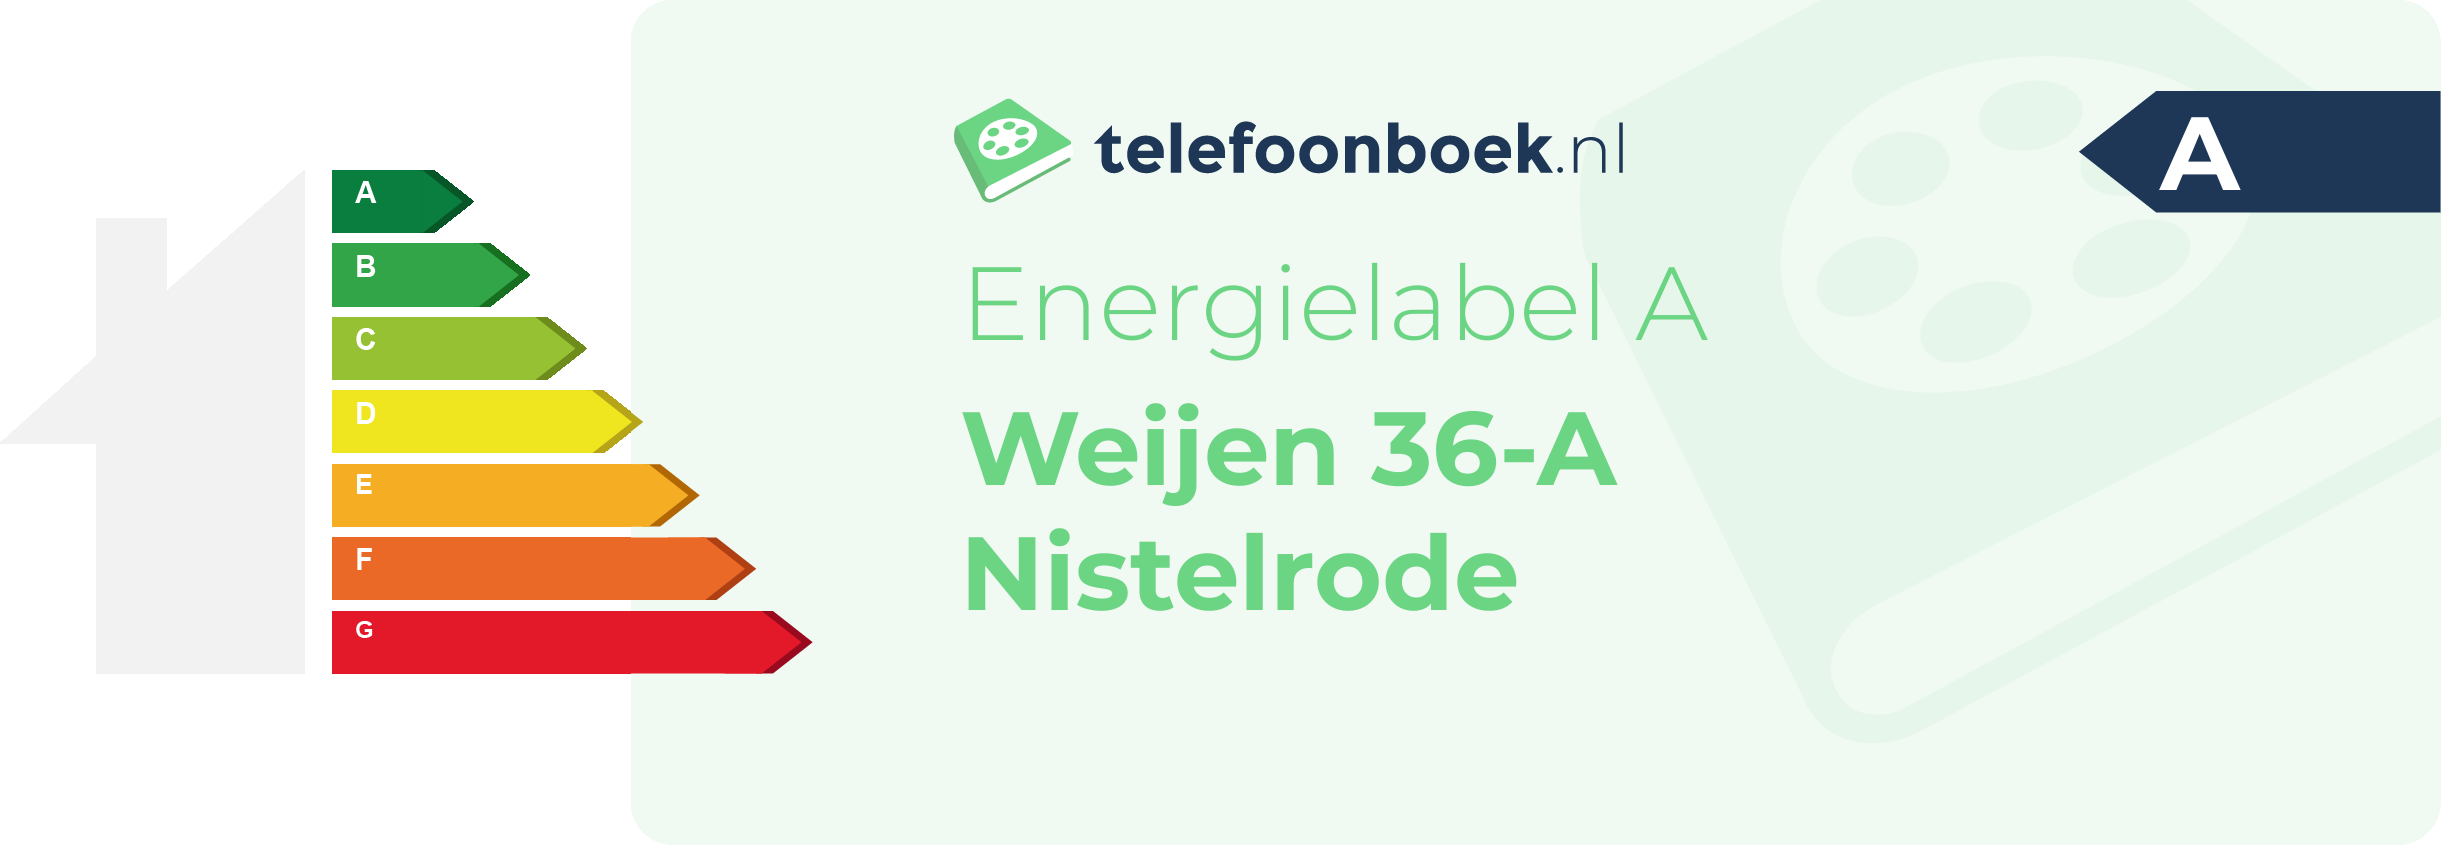 Energielabel Weijen 36-A Nistelrode